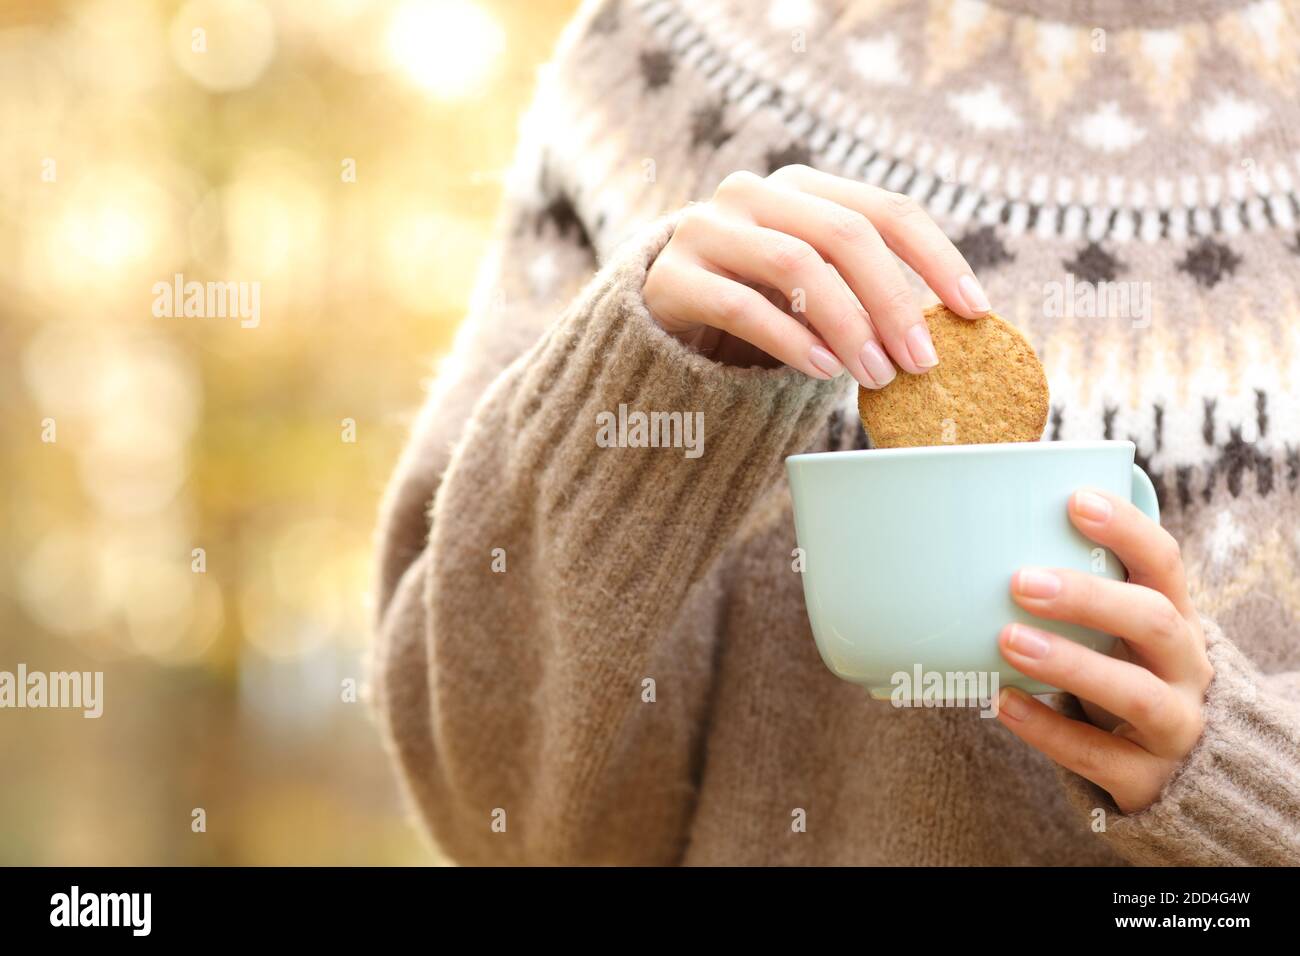 Nahaufnahme einer Frau Hand Eintauchen Cookie in ein Kaffeebecher im Herbst  in einem Park Stockfotografie - Alamy